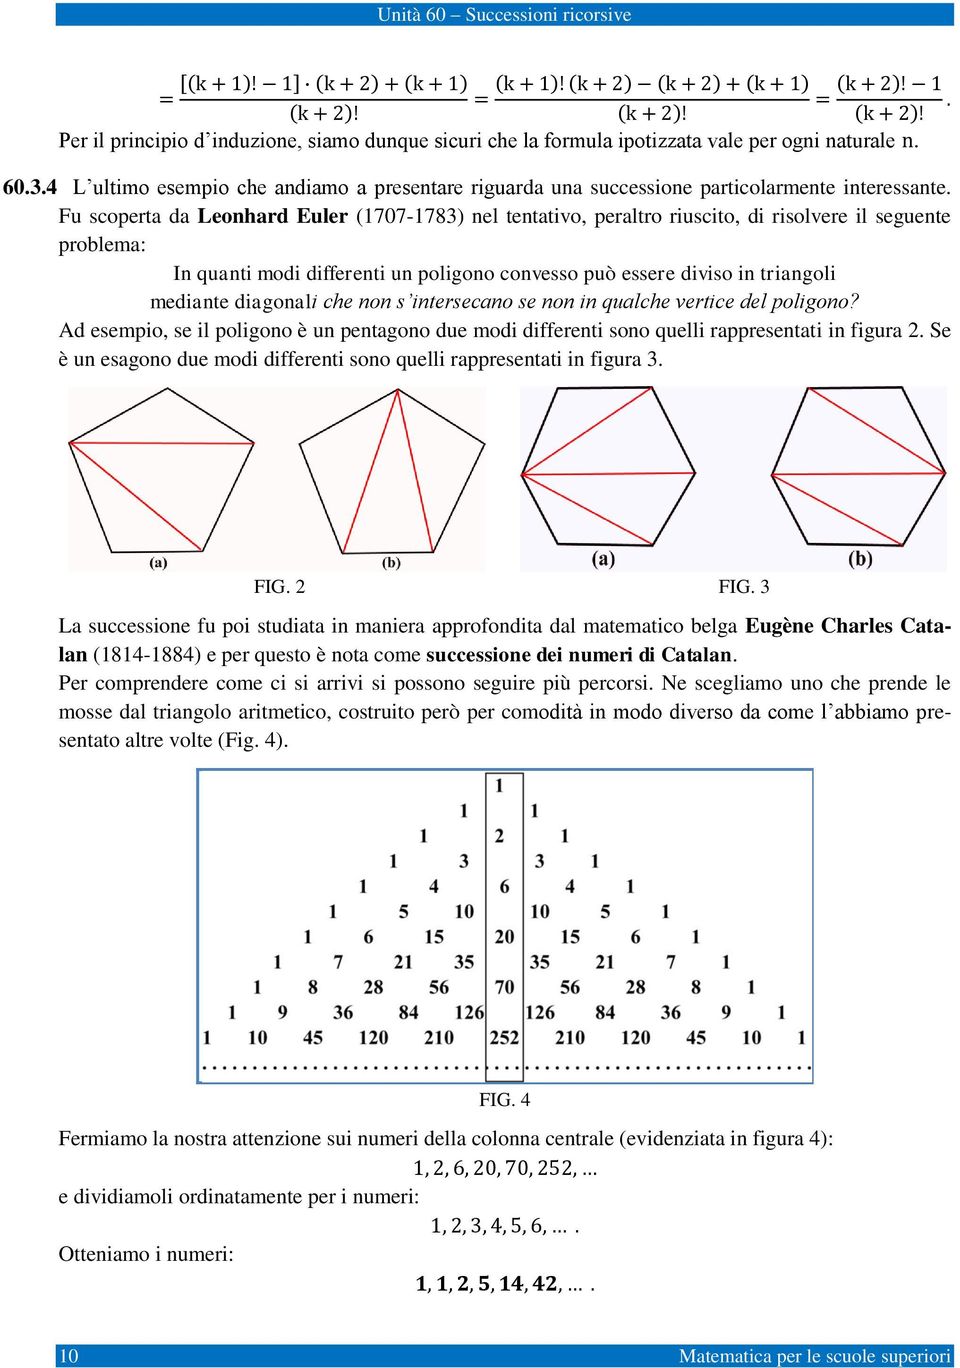 Fu scoperta da Leonhard Euler (707-783) nel tentativo, peraltro riuscito, di risolvere il seguente problema: In quanti modi differenti un poligono convesso può essere diviso in triangoli mediante